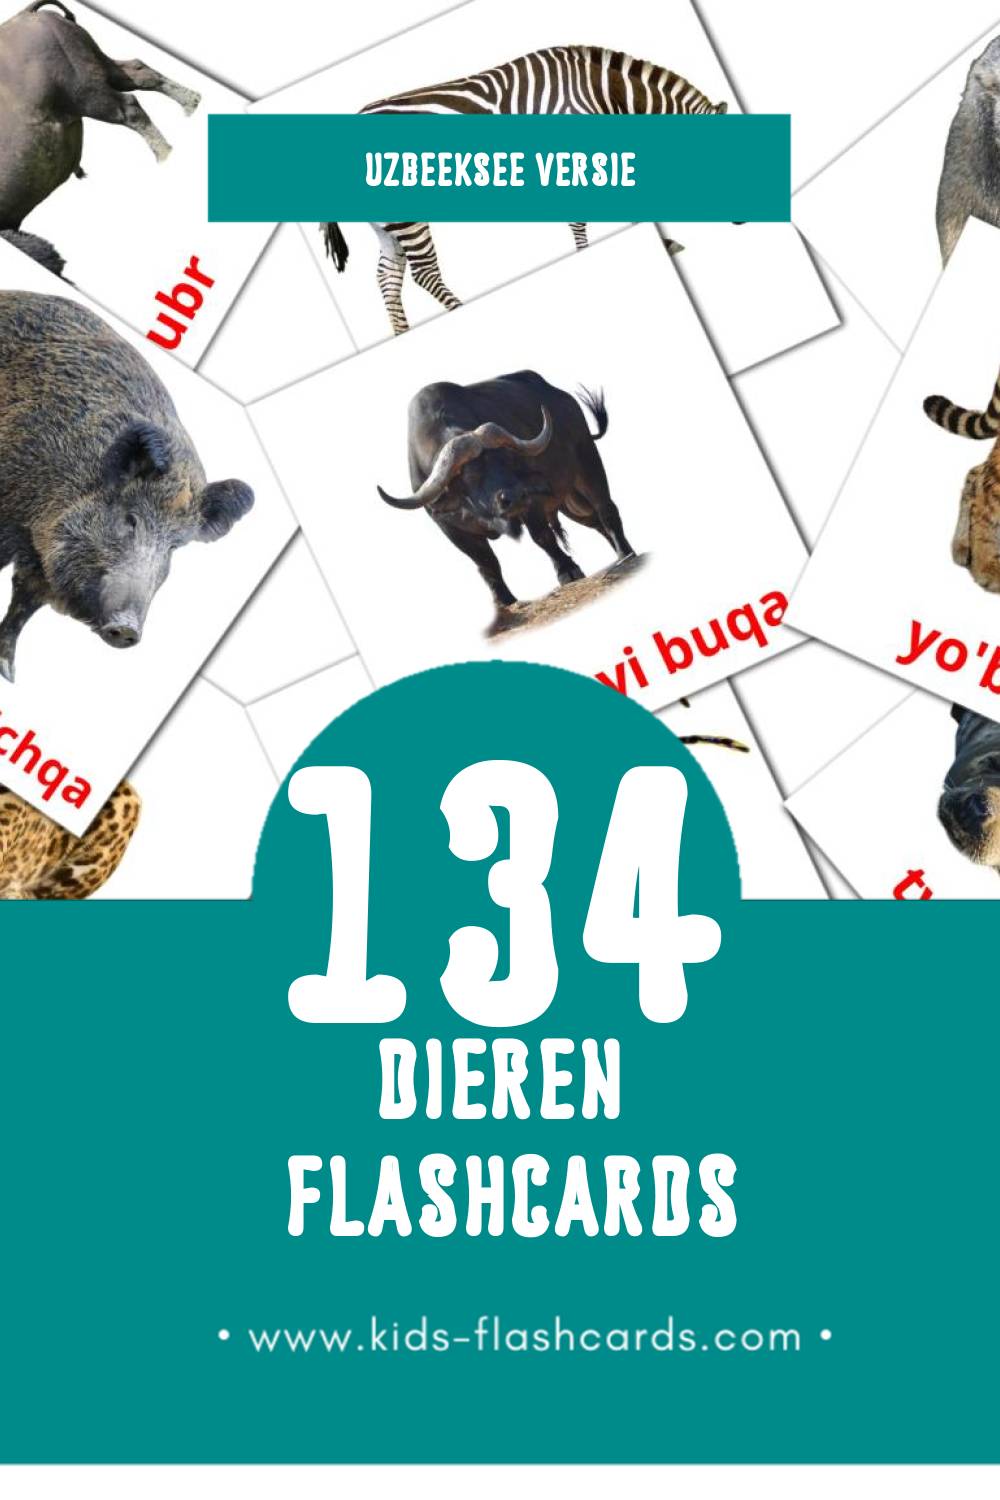 Visuele Hayvonlar Flashcards voor Kleuters (134 kaarten in het Uzbeekse)